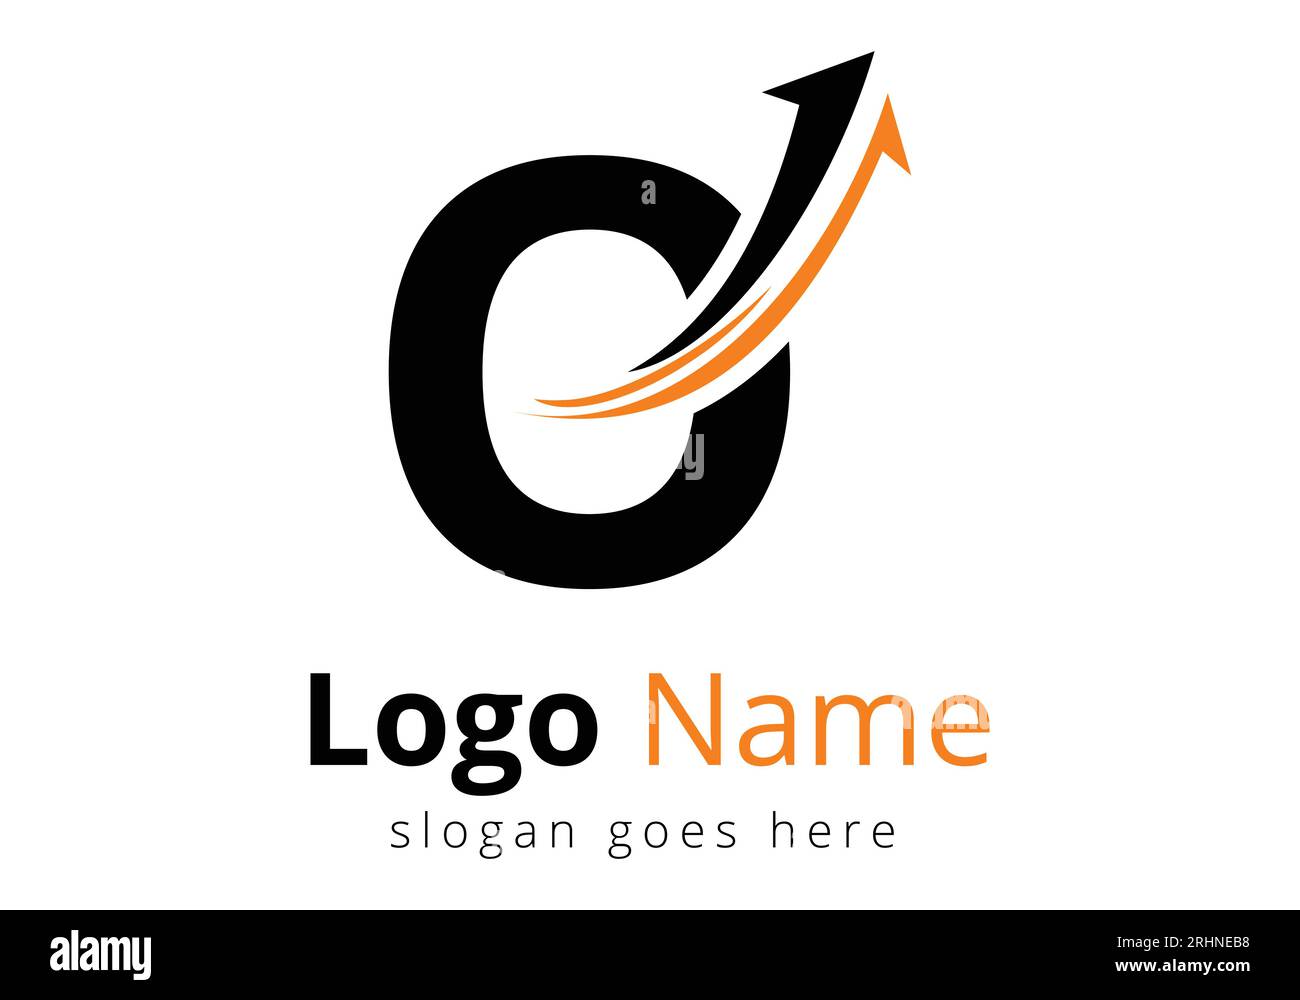 Logo de financement avec lettre O. Concept de logo financier ou de réussite. Logo pour l'entreprise comptable et l'identité de l'entreprise Illustration de Vecteur